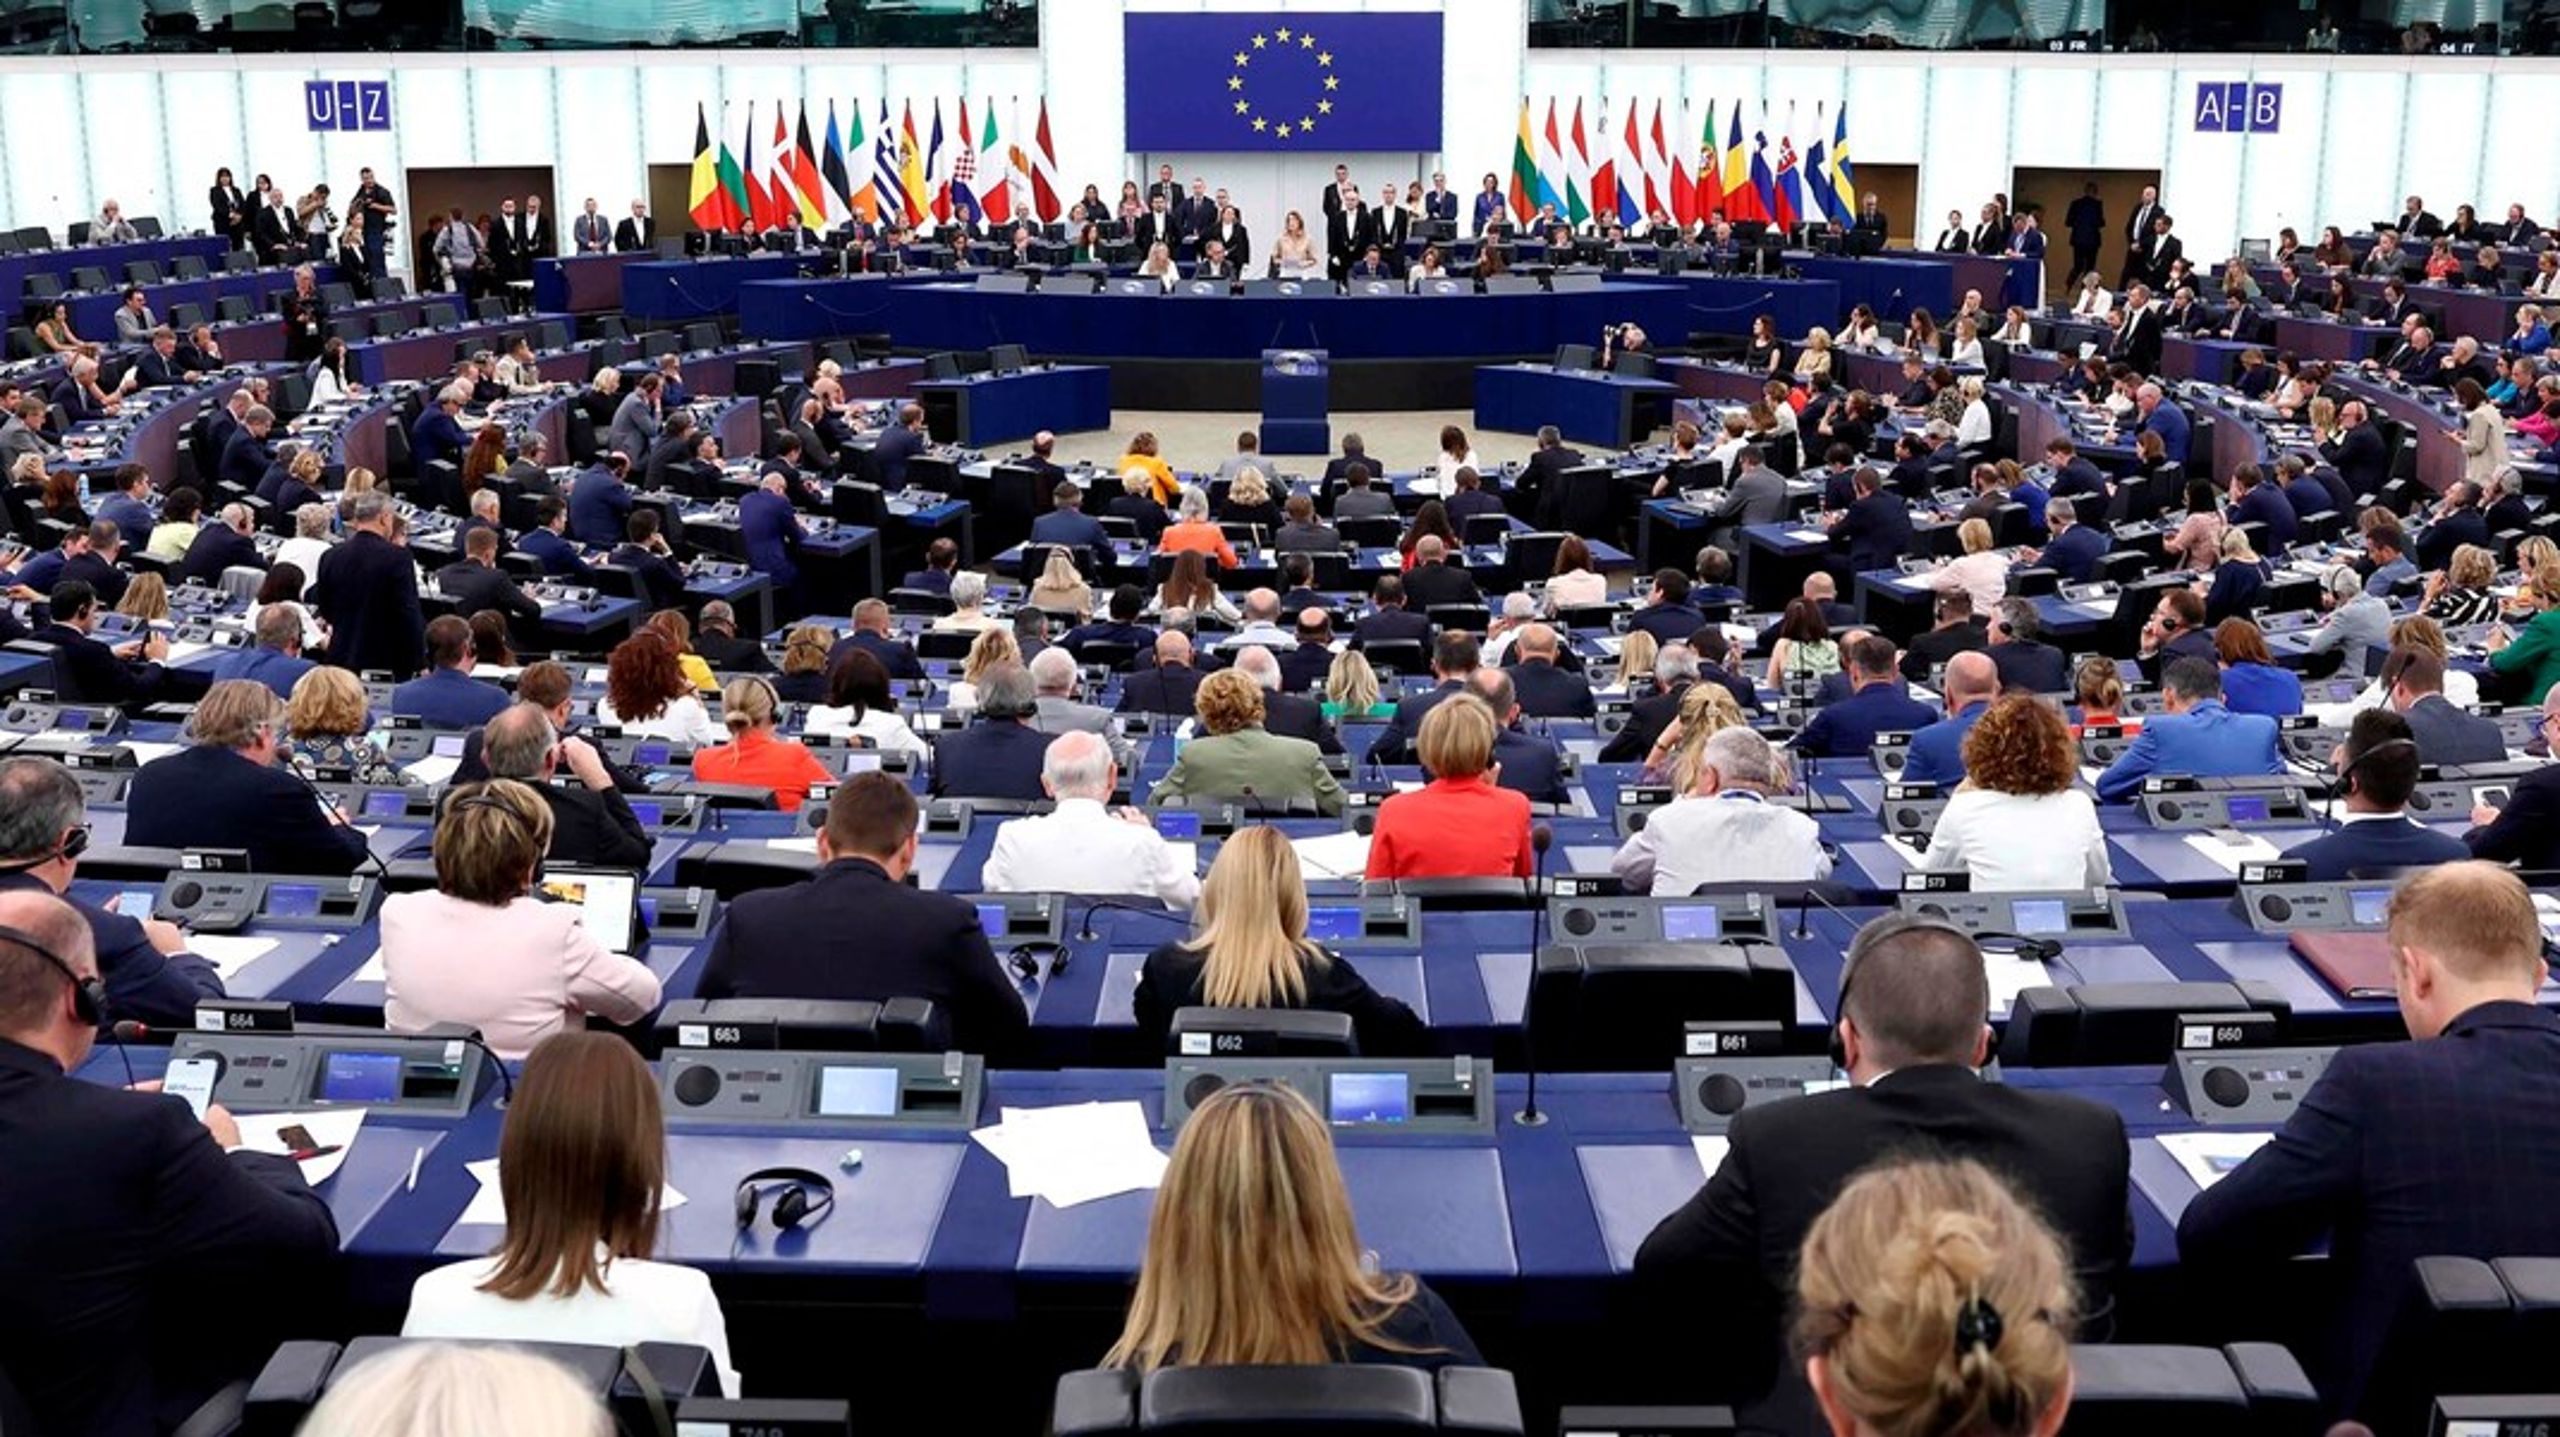 De 720 nyvalgte EU-parlamentarikere fra 27 lande afholder i disse dage deres første plenarsamling i Strasbourg siden valget 9. juni.